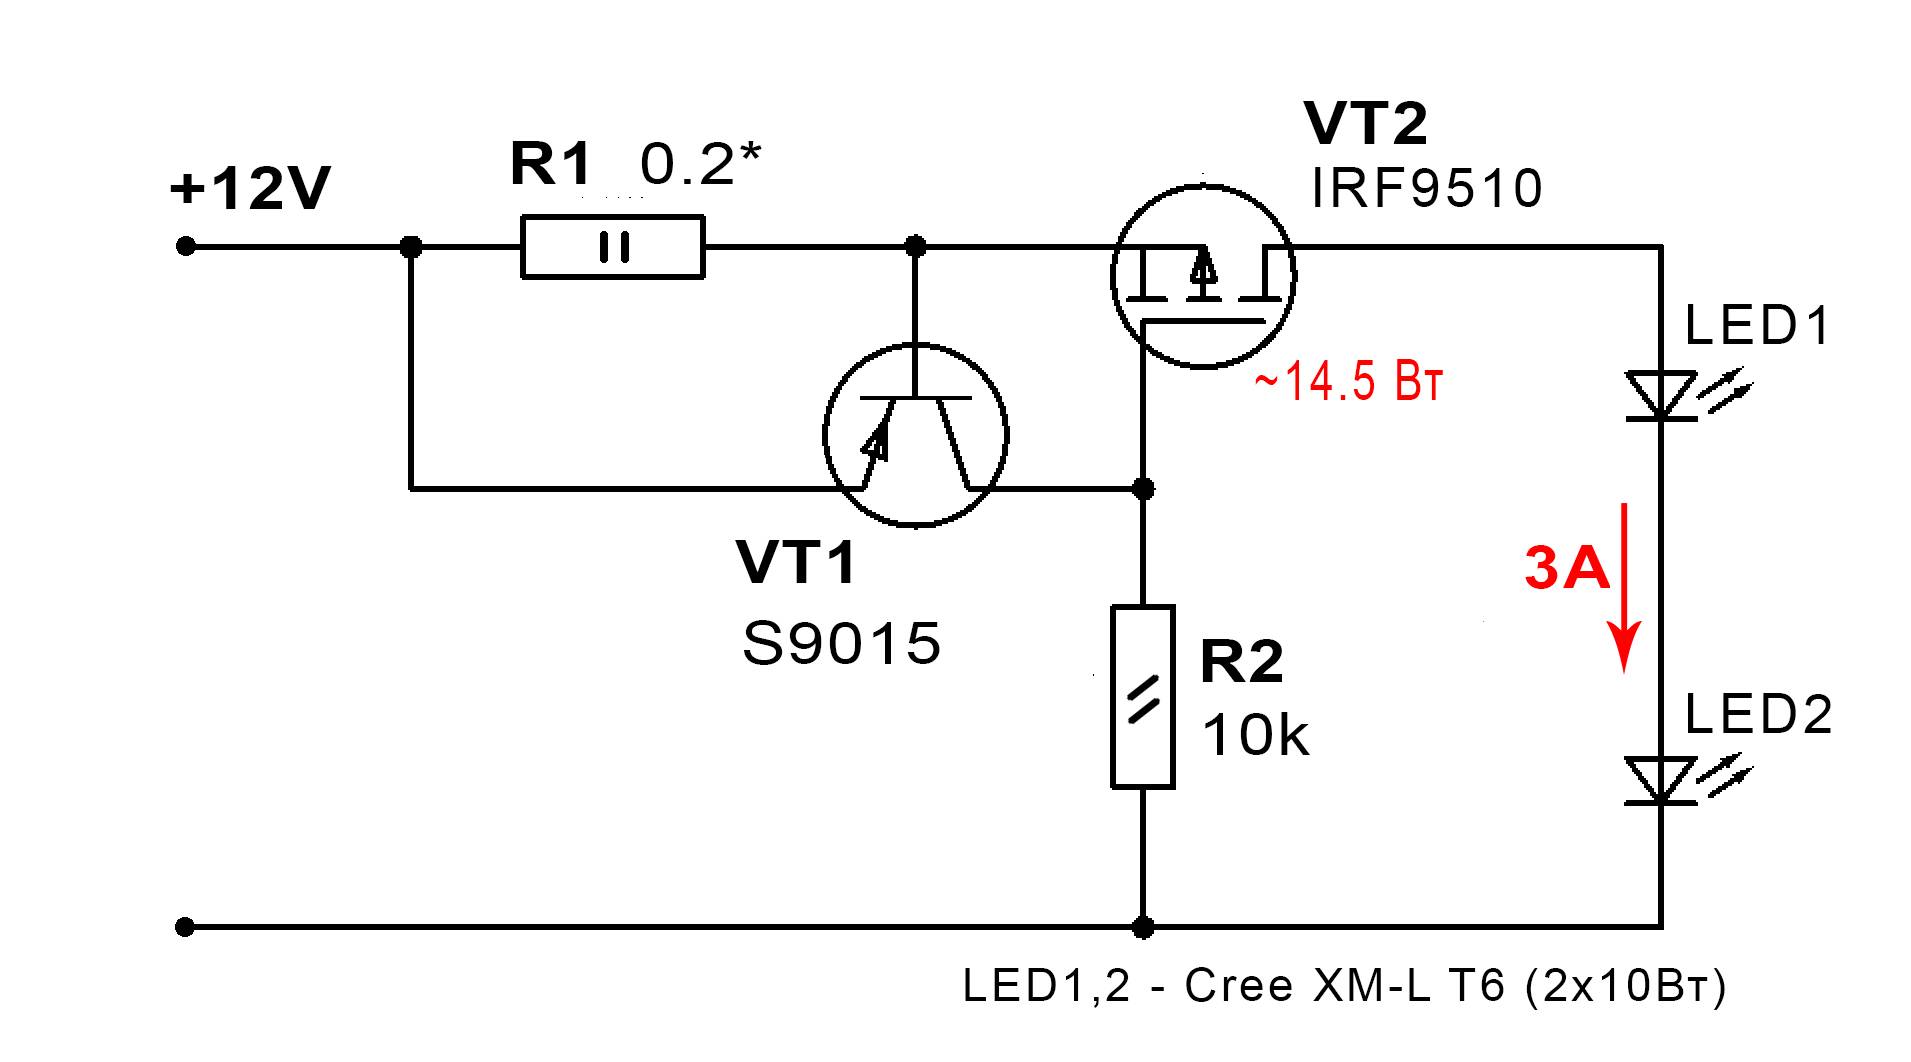 Cтабилизатор тока на lm317 для светодиодов